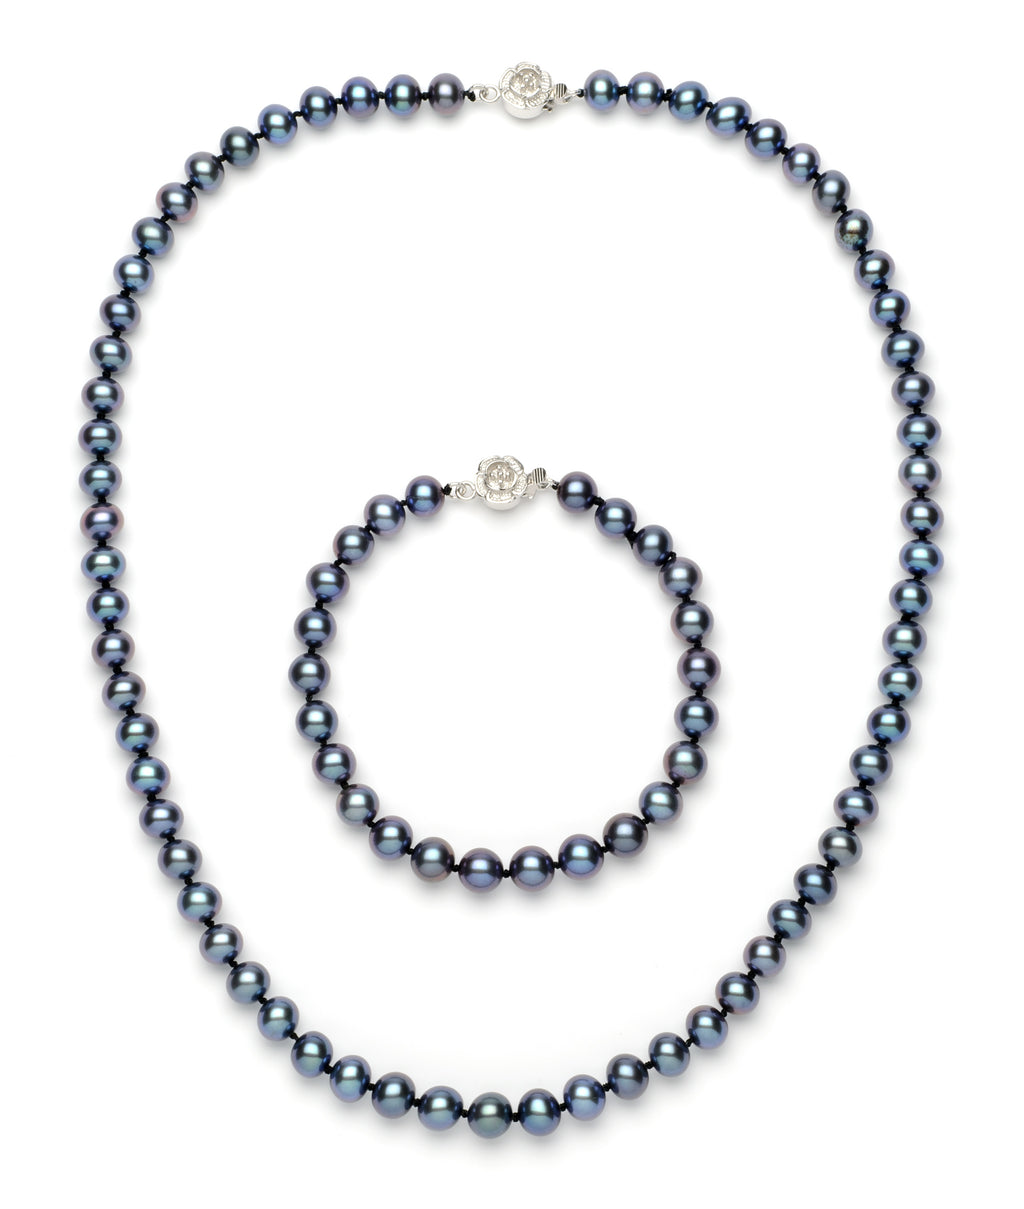 Necklace/Bracelet Set 6.0-7.0 mm Black Freshwater Pearls